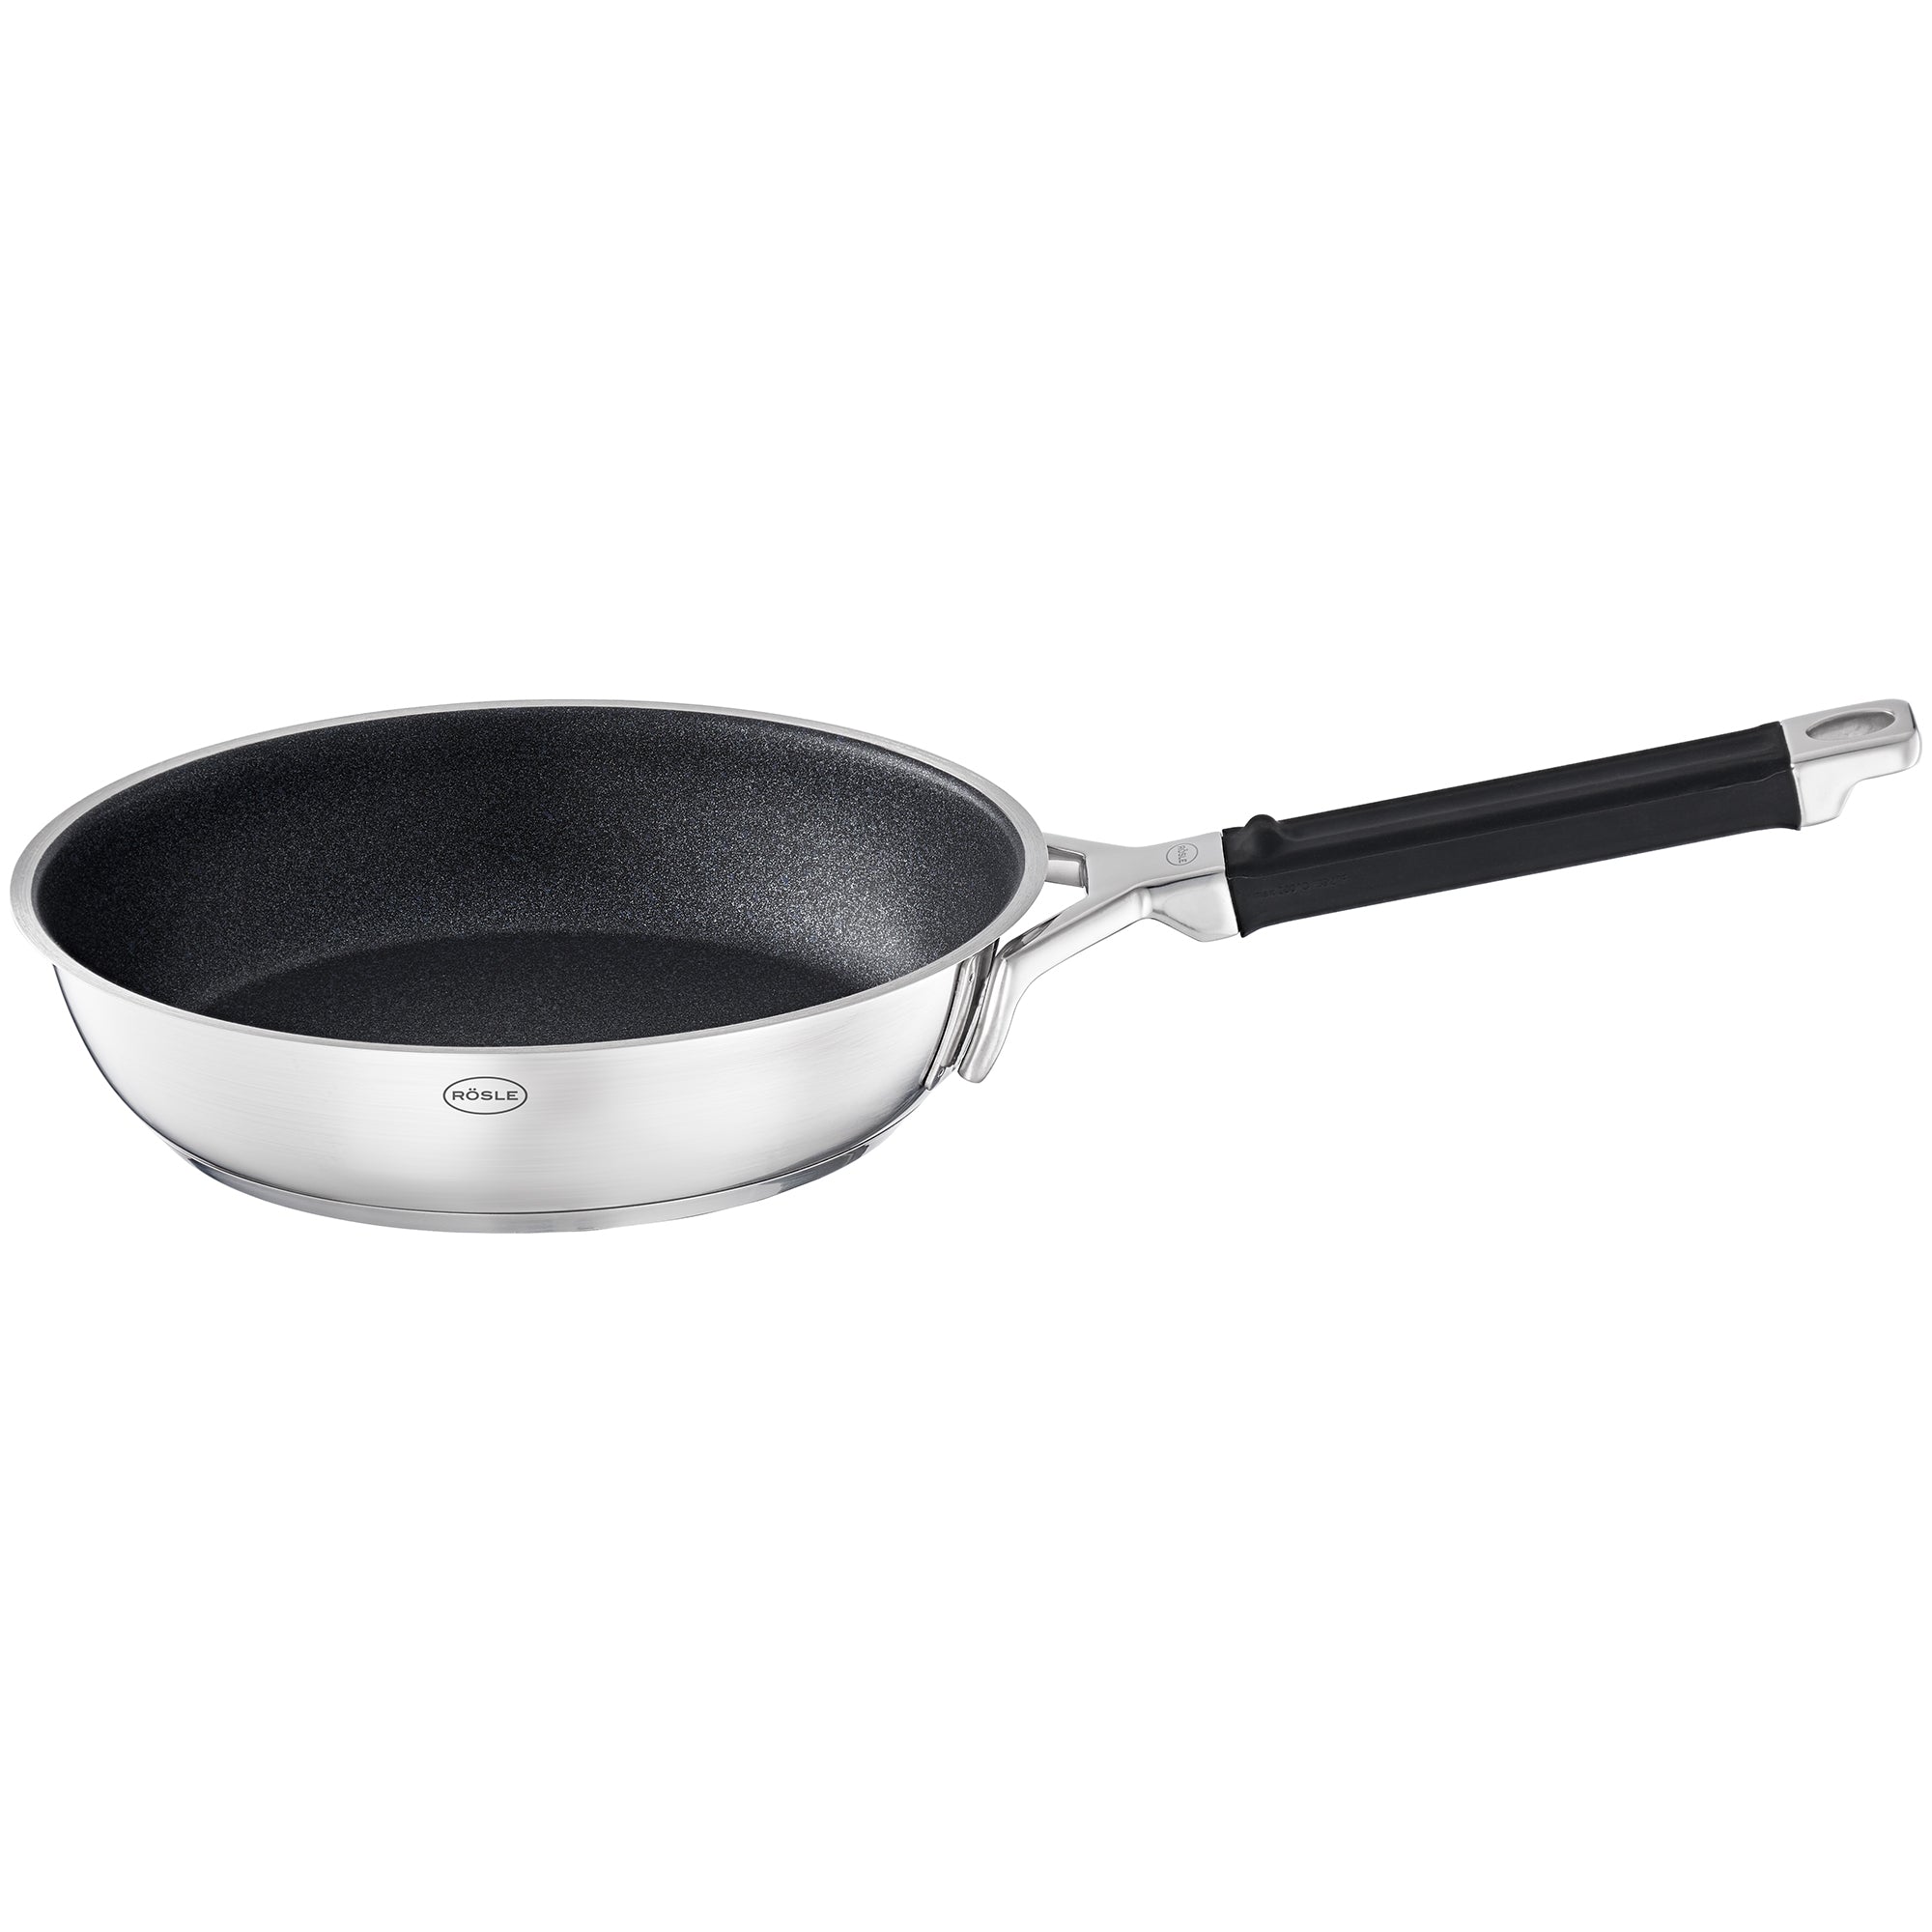 RÖSLE Silence Pro 24cm Non Stick Frying Pan